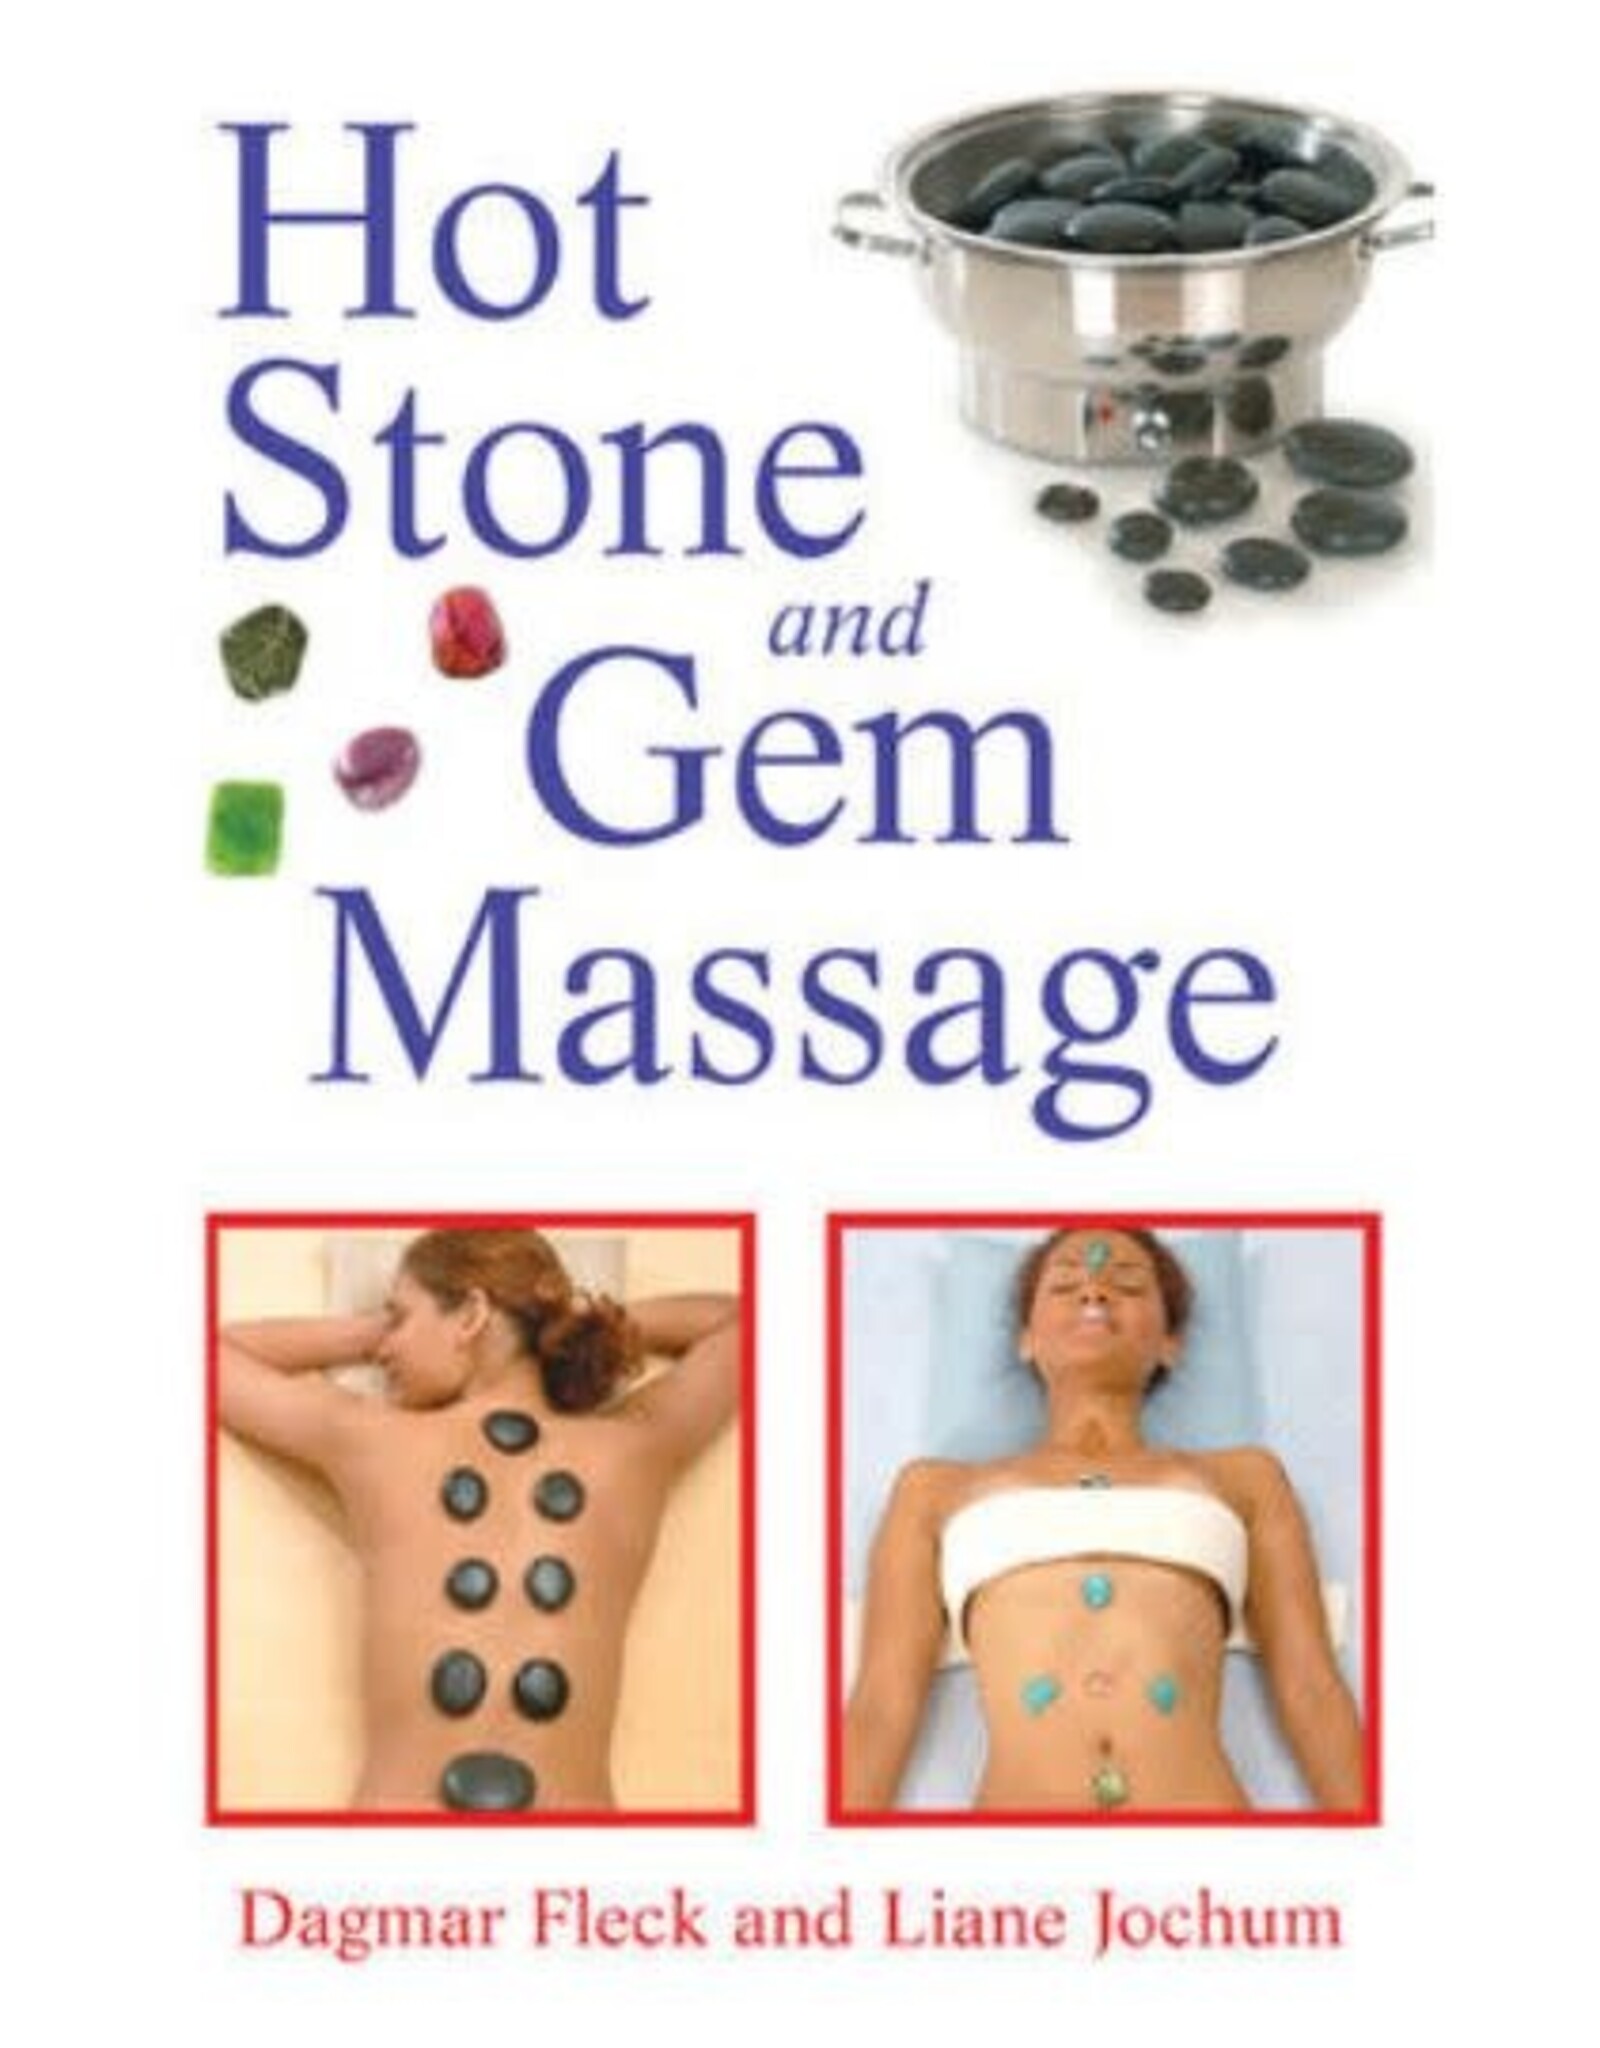 Dagmar Fleck Hot Stone and Gem Massage by Dagmar Fleck & Liane Jochum